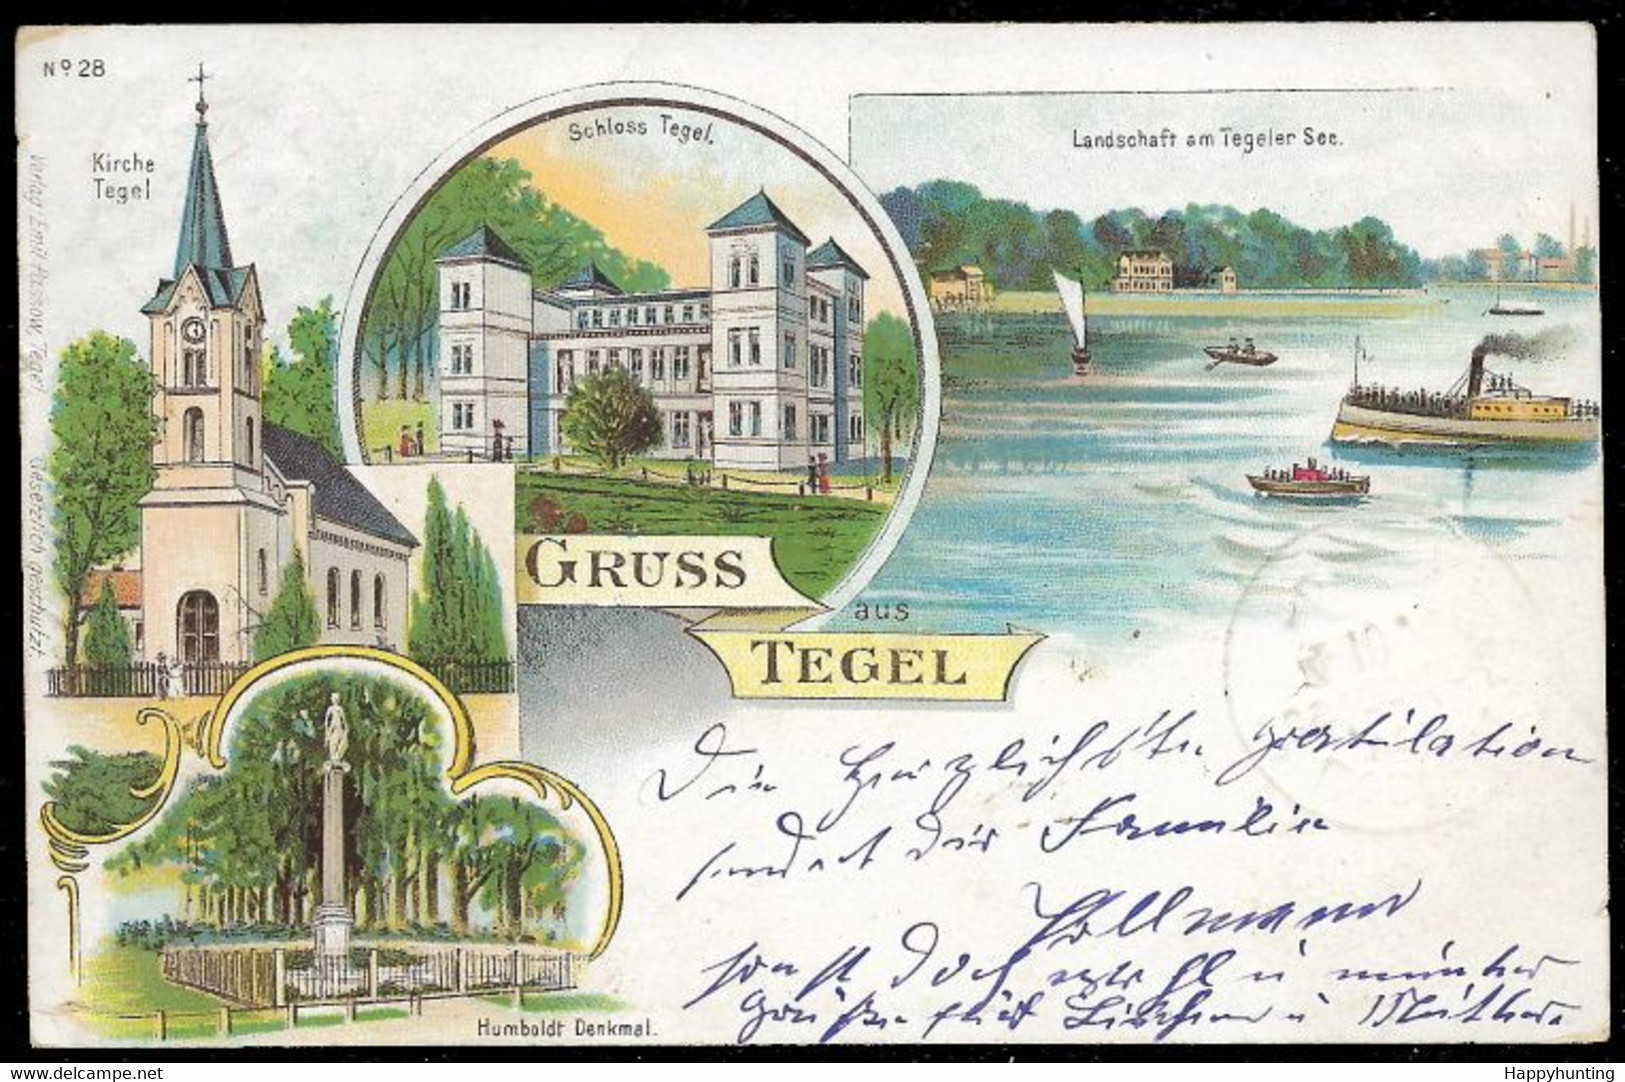 1899 LITHO AK GRUSS TEGEL – SCHLOSS TEGEL – LANDSCHAFT AM TEGELER SEE – HUMBOLDT DENLMAL Gelaufen - Tegel